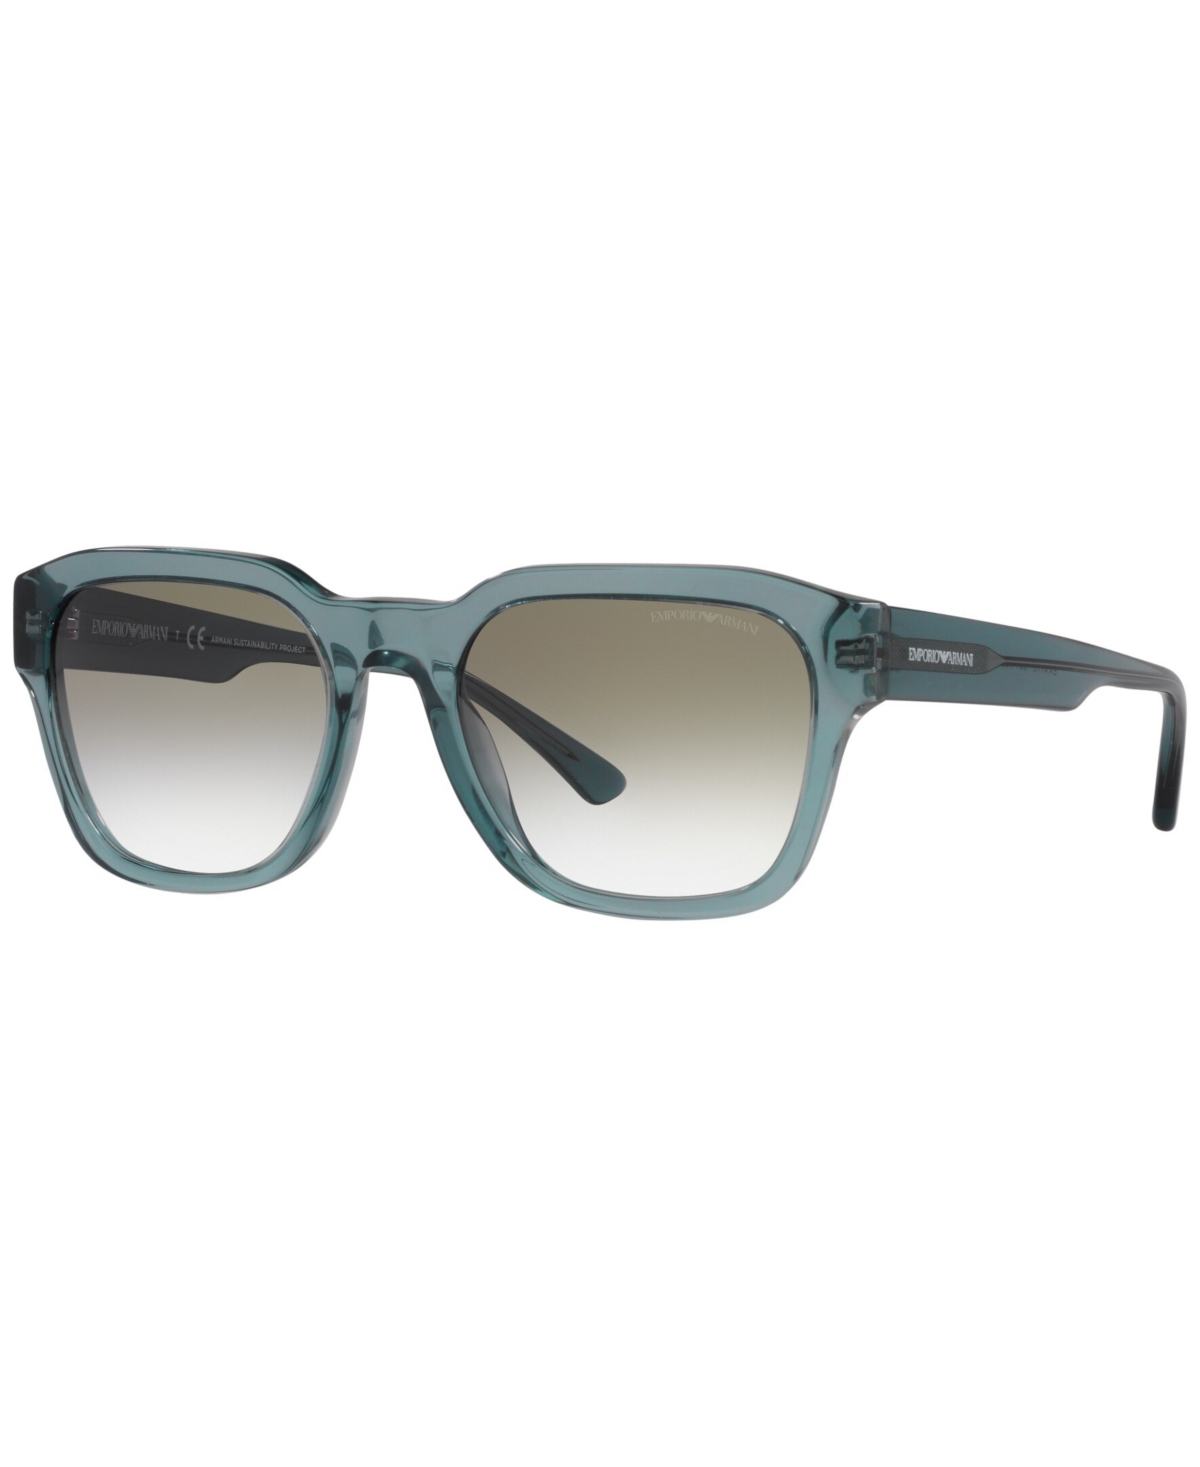 Emporio Armani Men's Sunglasses, Ea4175 In Shiny Transparent Blue